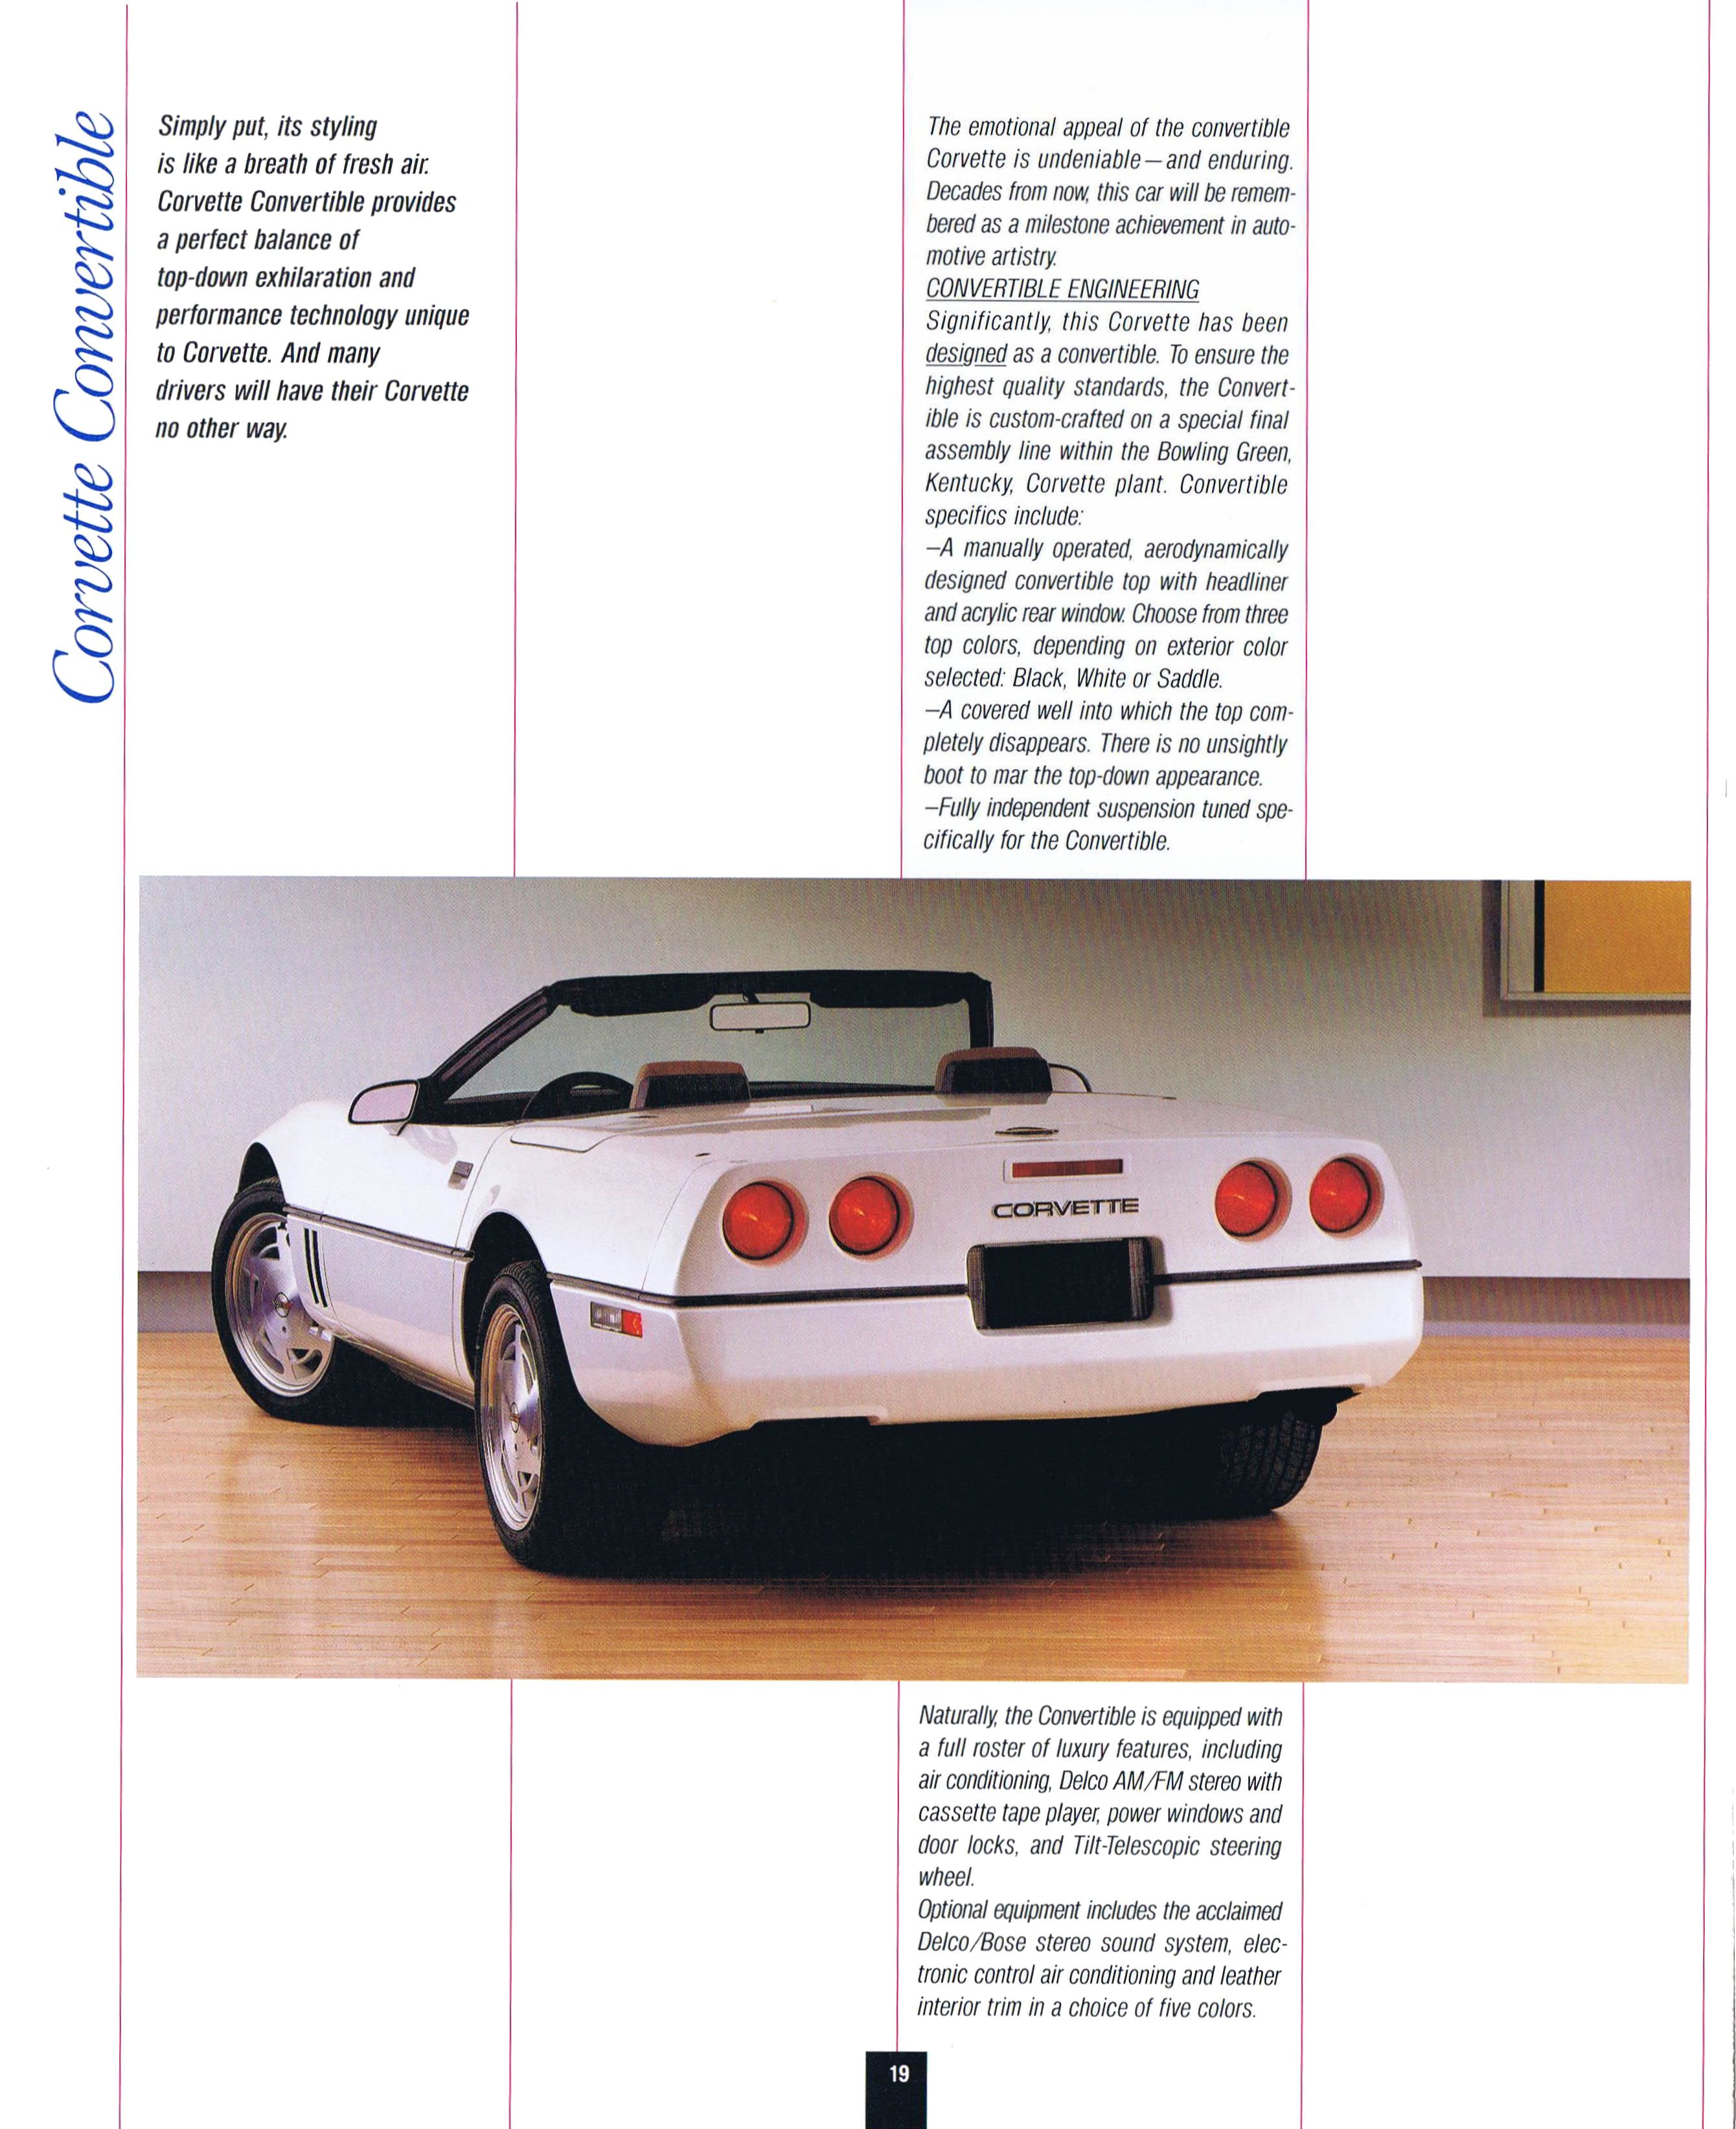 1989 Chevrolet Corvette brochure